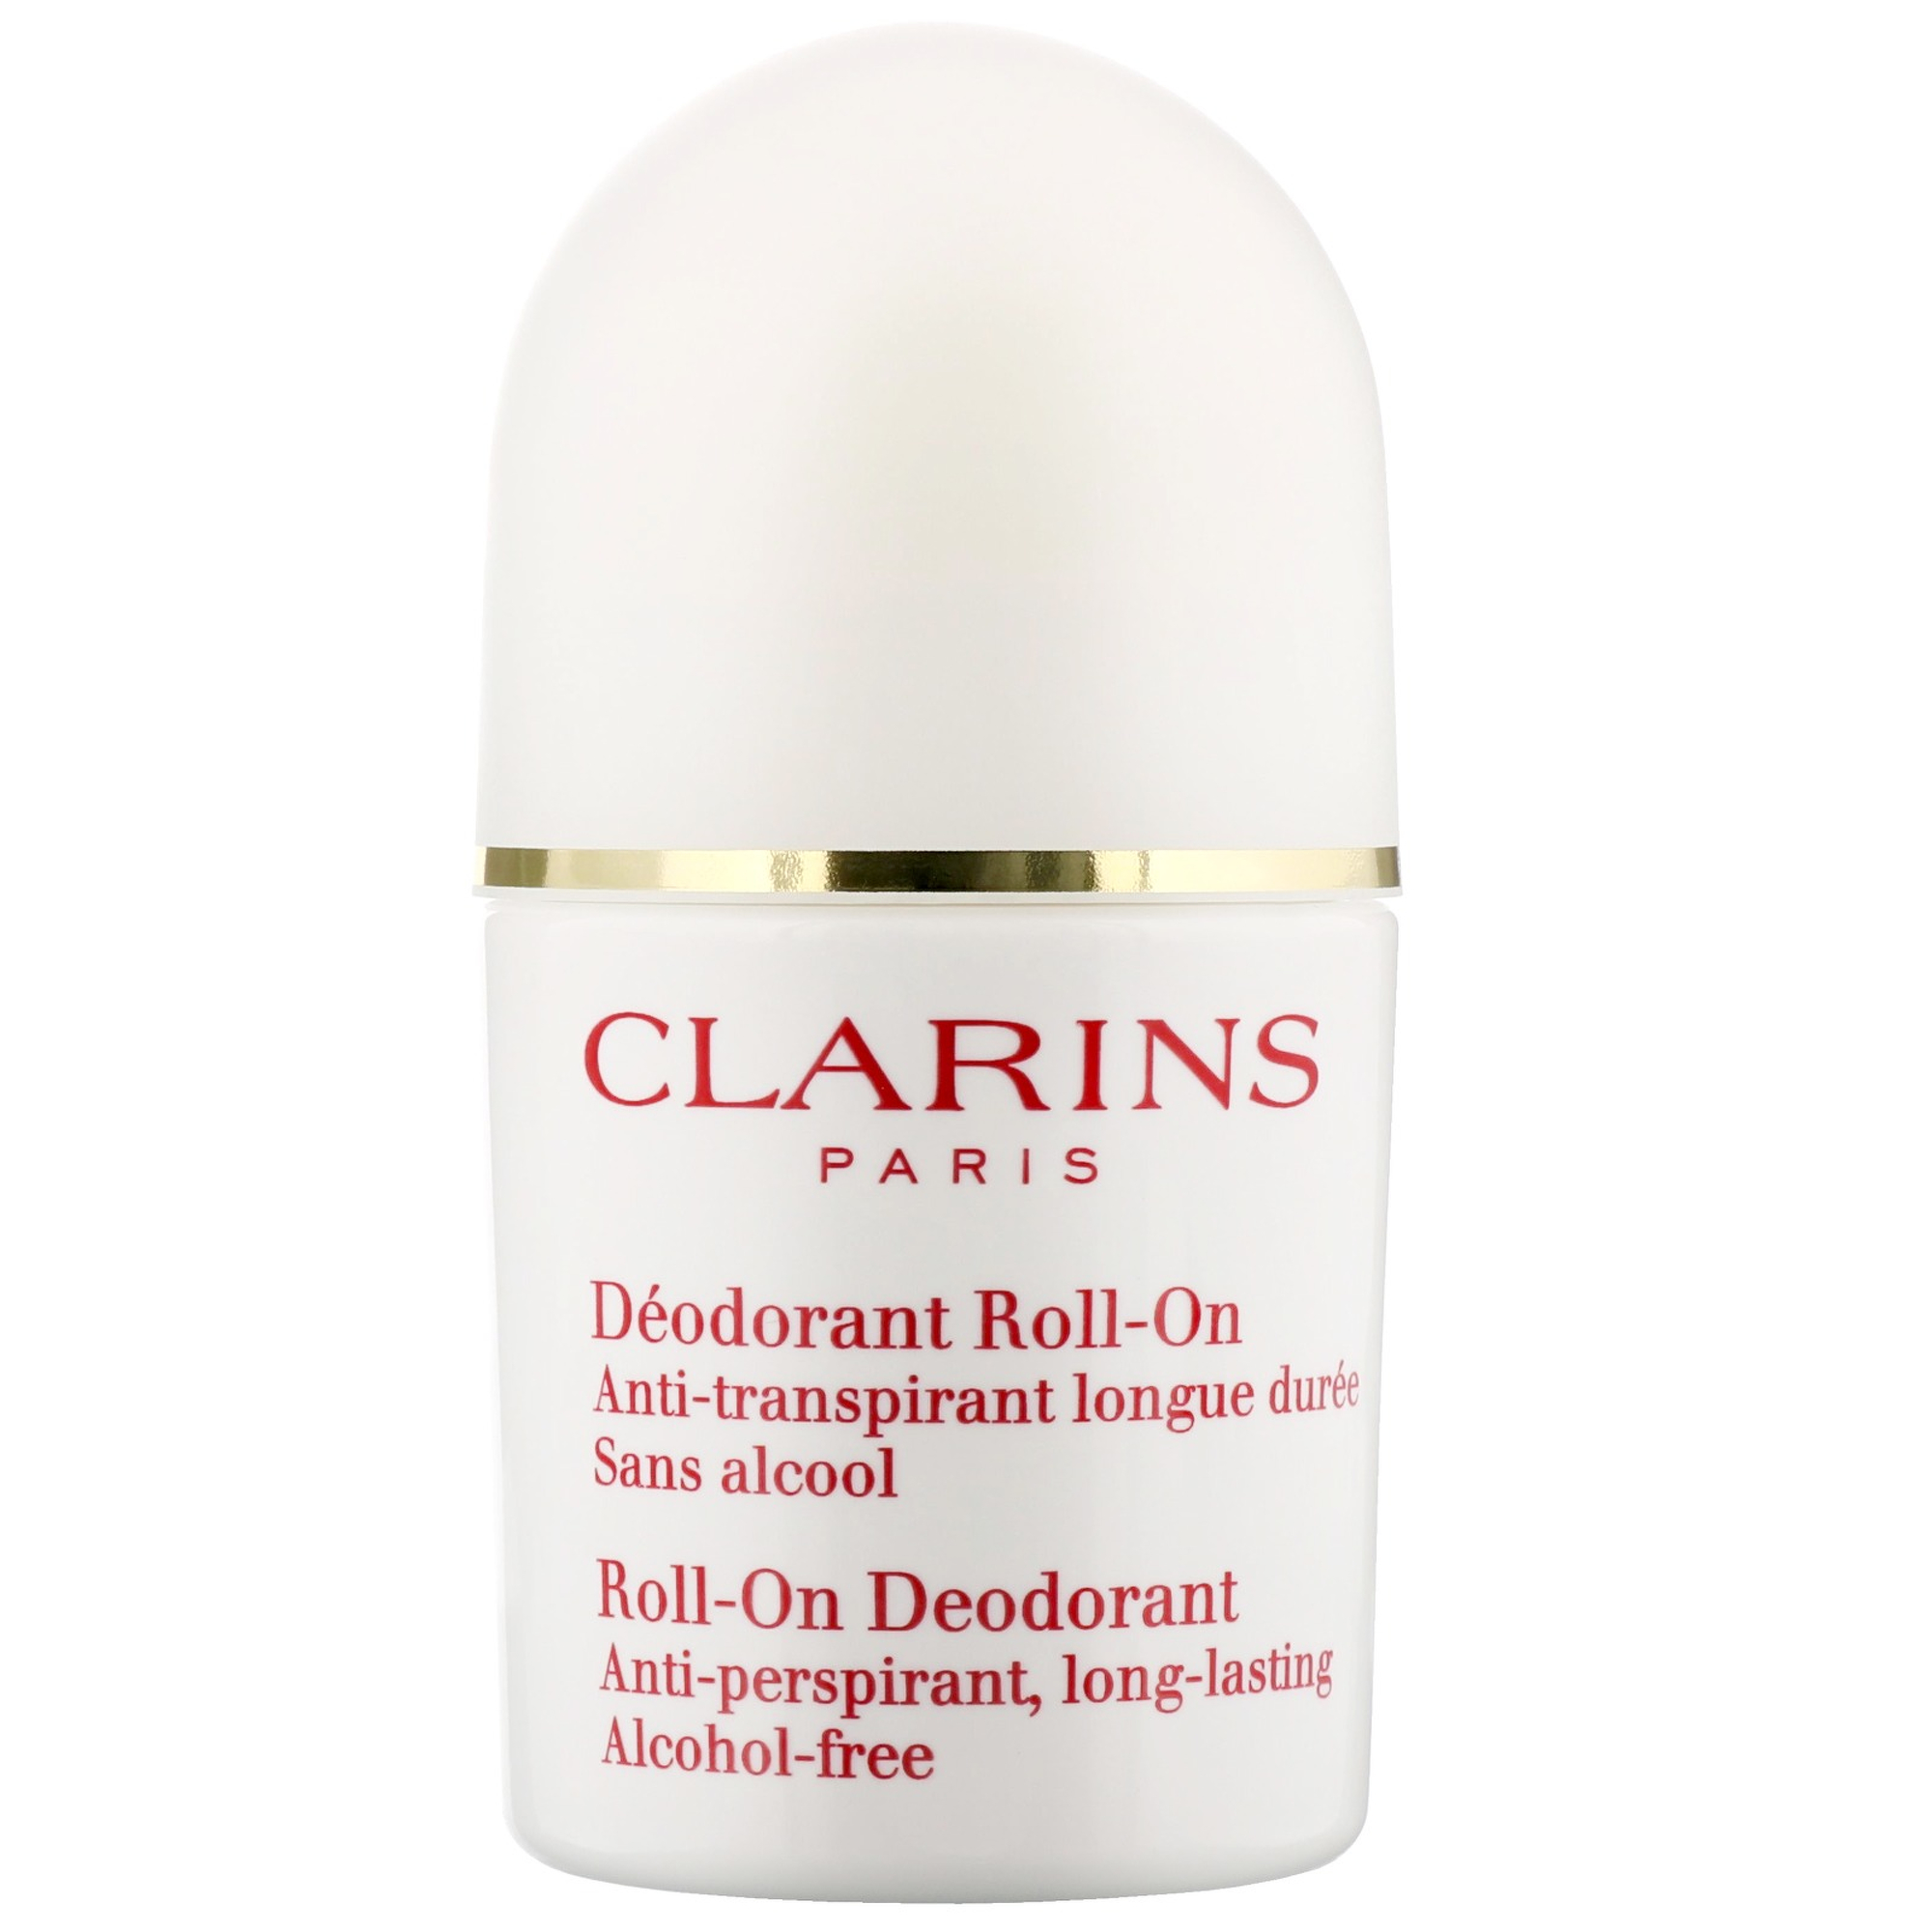 Image of Clarins Bath & Shower Roll-On Deodorant 50ml / 1.7 fl.oz.